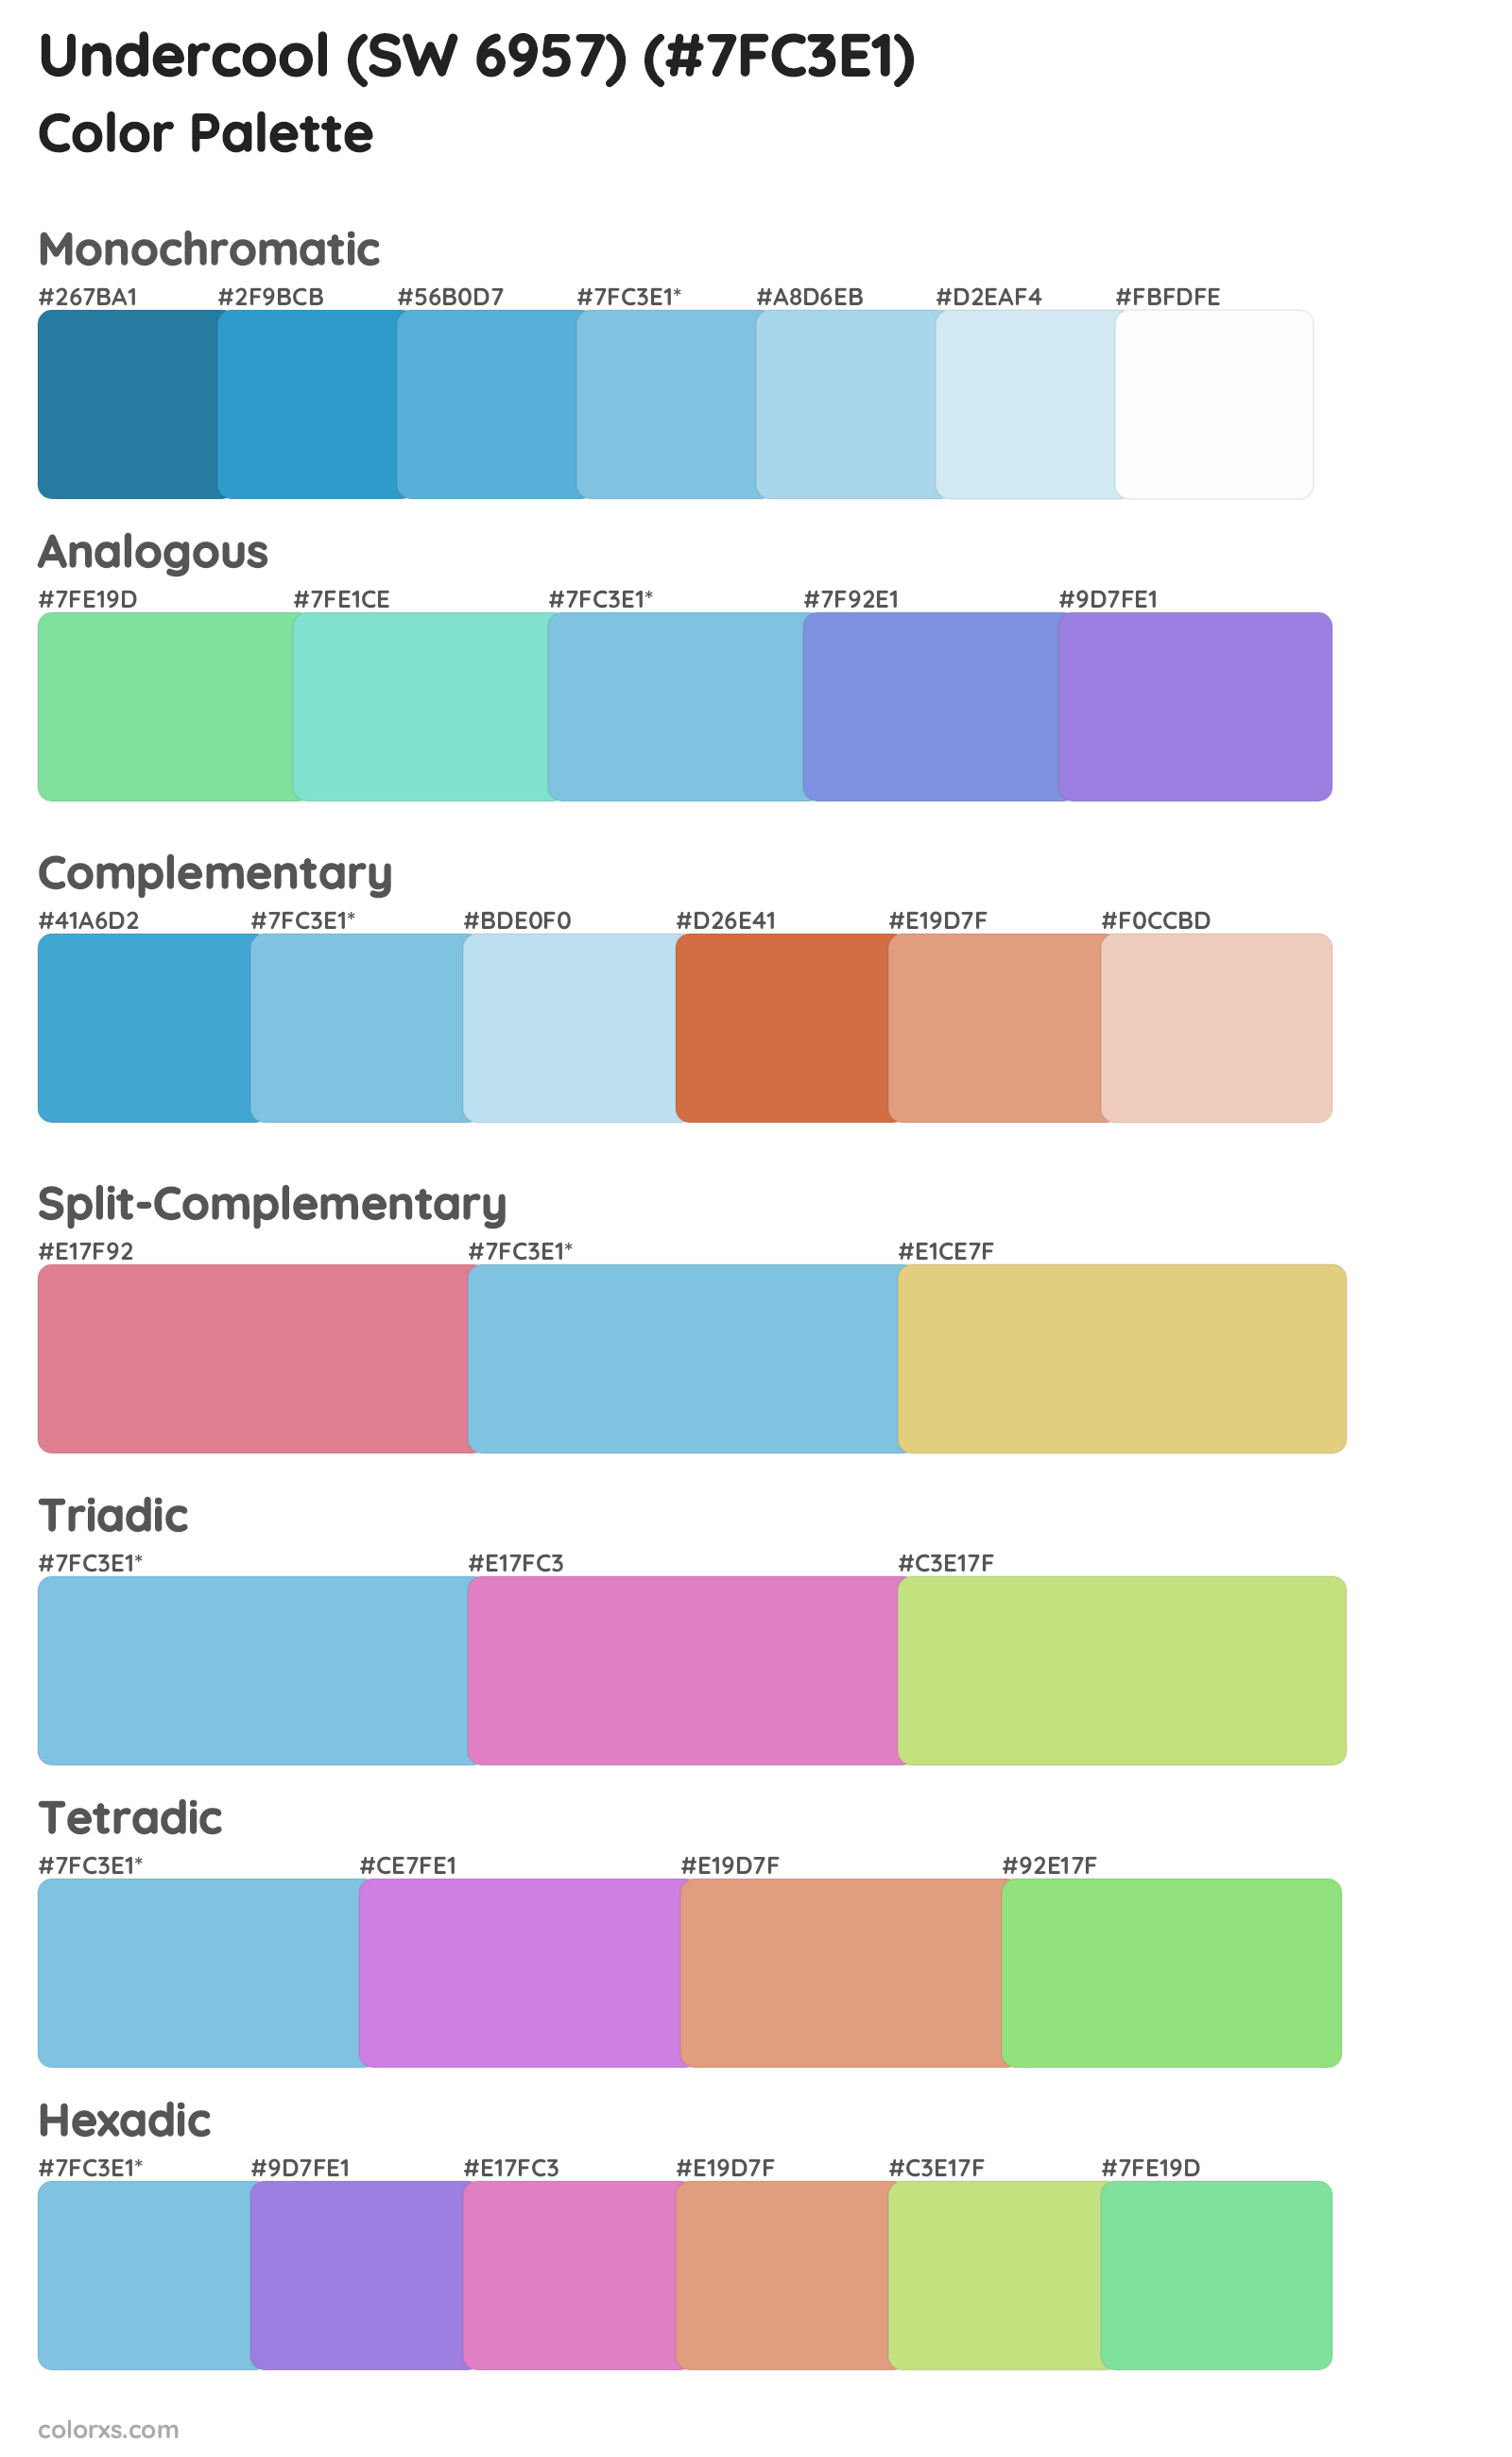 Undercool (SW 6957) Color Scheme Palettes